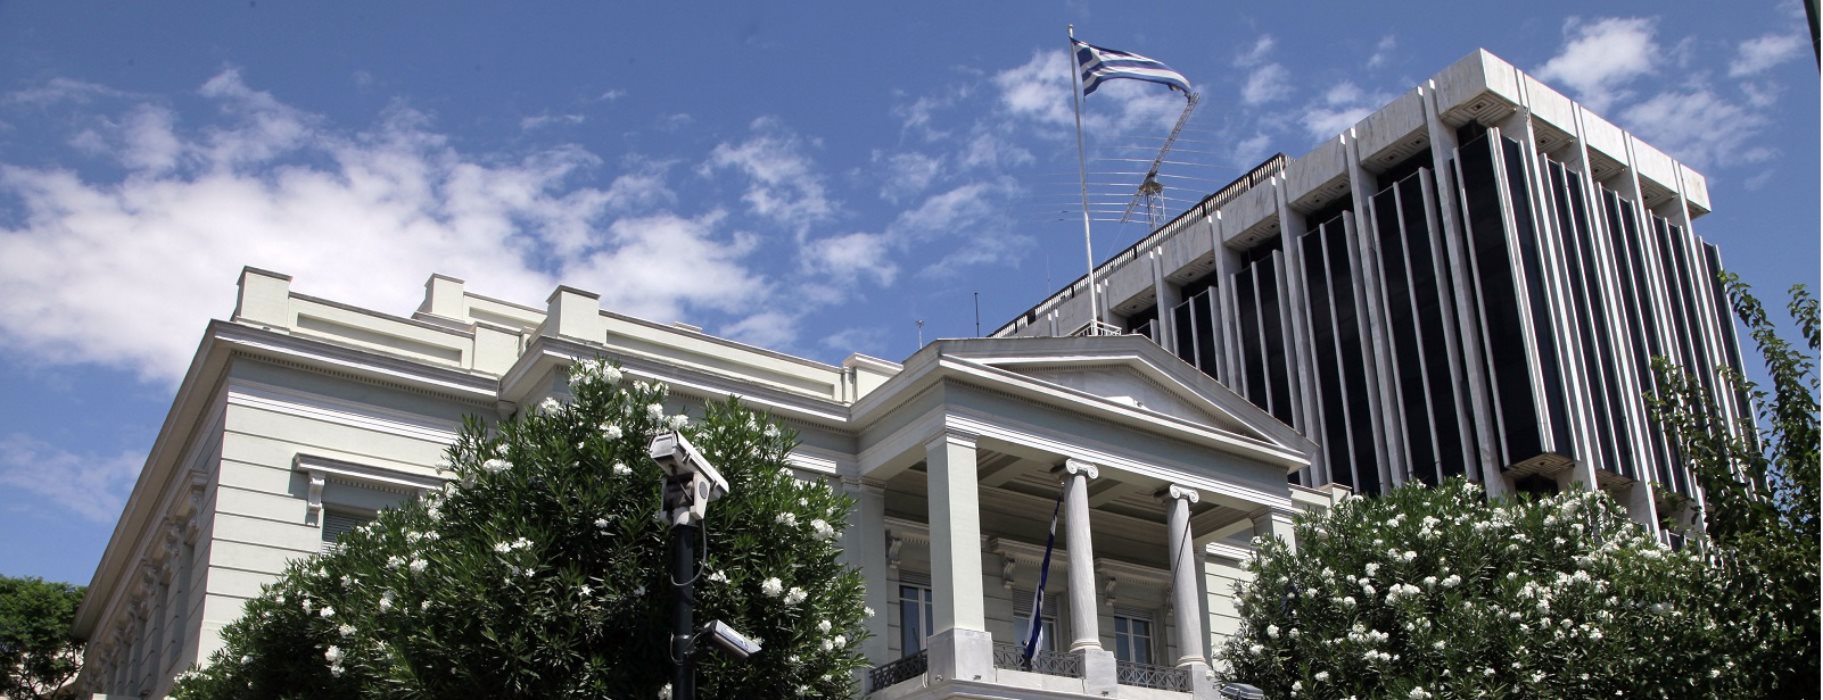 Πρόβλημα: Ξεκίνησε «διάλογος» για όλες τις αναθεωρητικές απαιτήσεις της Άγκυρας χωρίς να υπάρχει μια ελληνική διεκδίκηση